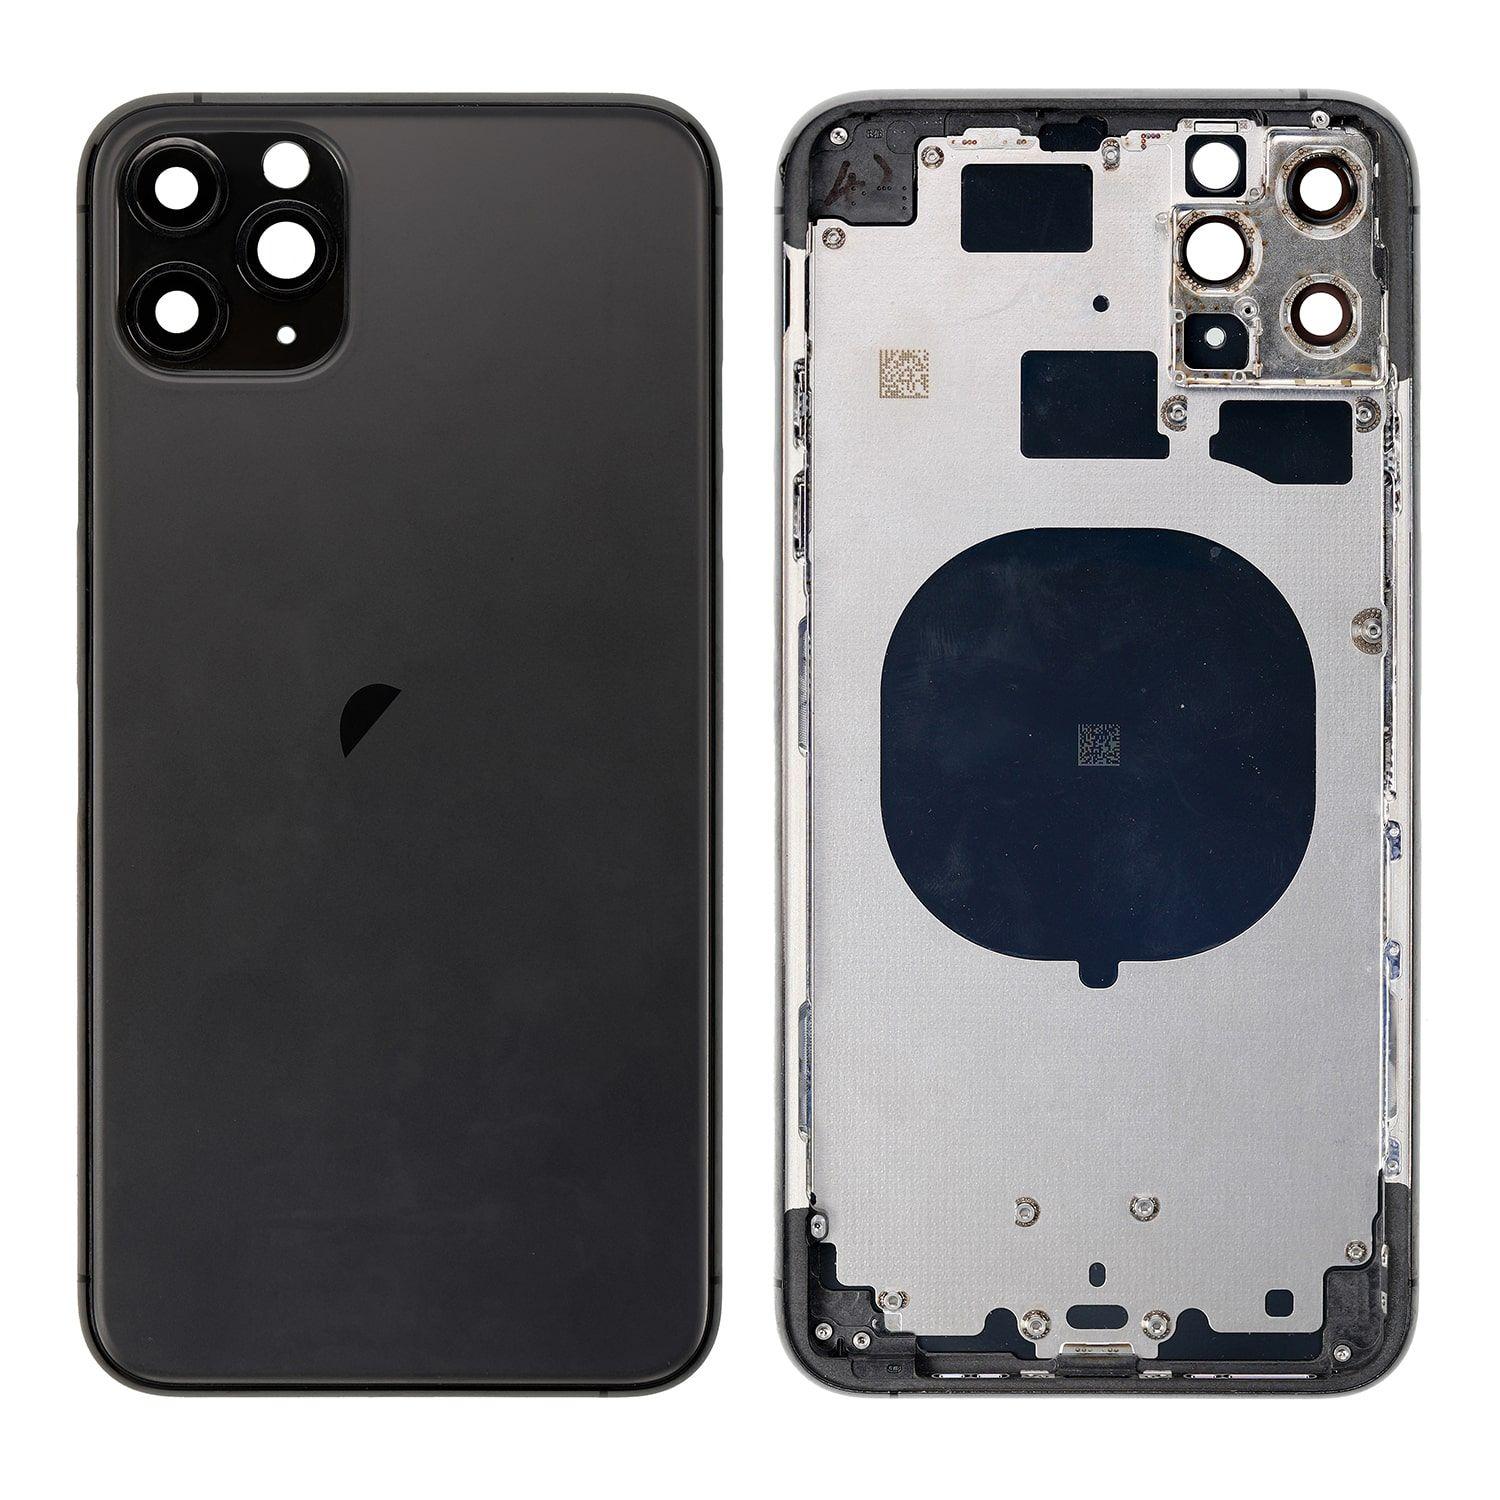 Korpus iPhone 11 Pro Max + zadní kryt černý